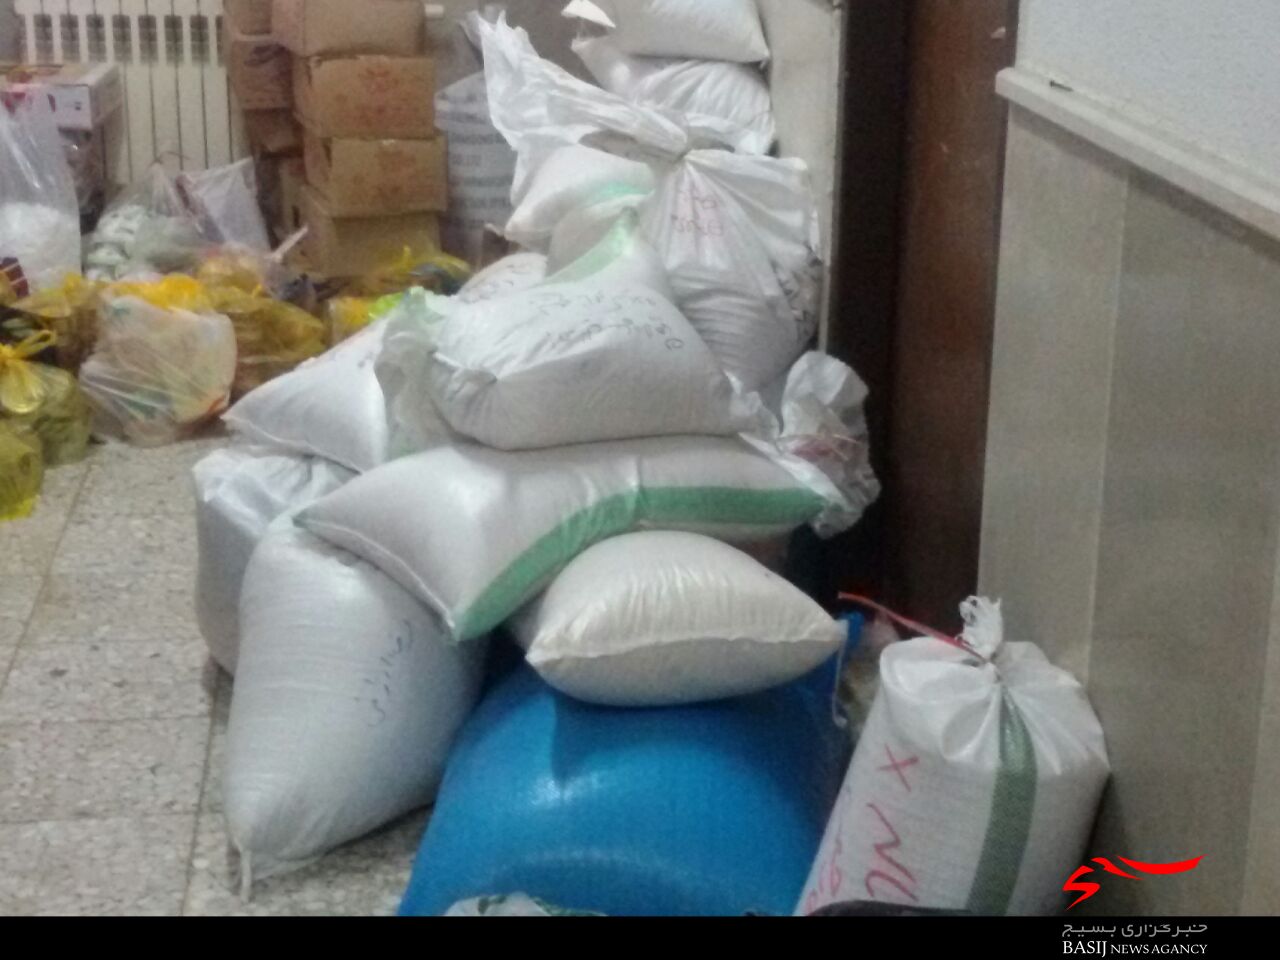 ارسال دومین محموله از کمکهای مردم و بسیجیان شهرستان لاهیجان به مناطق سیل زده کشور + تصاویر